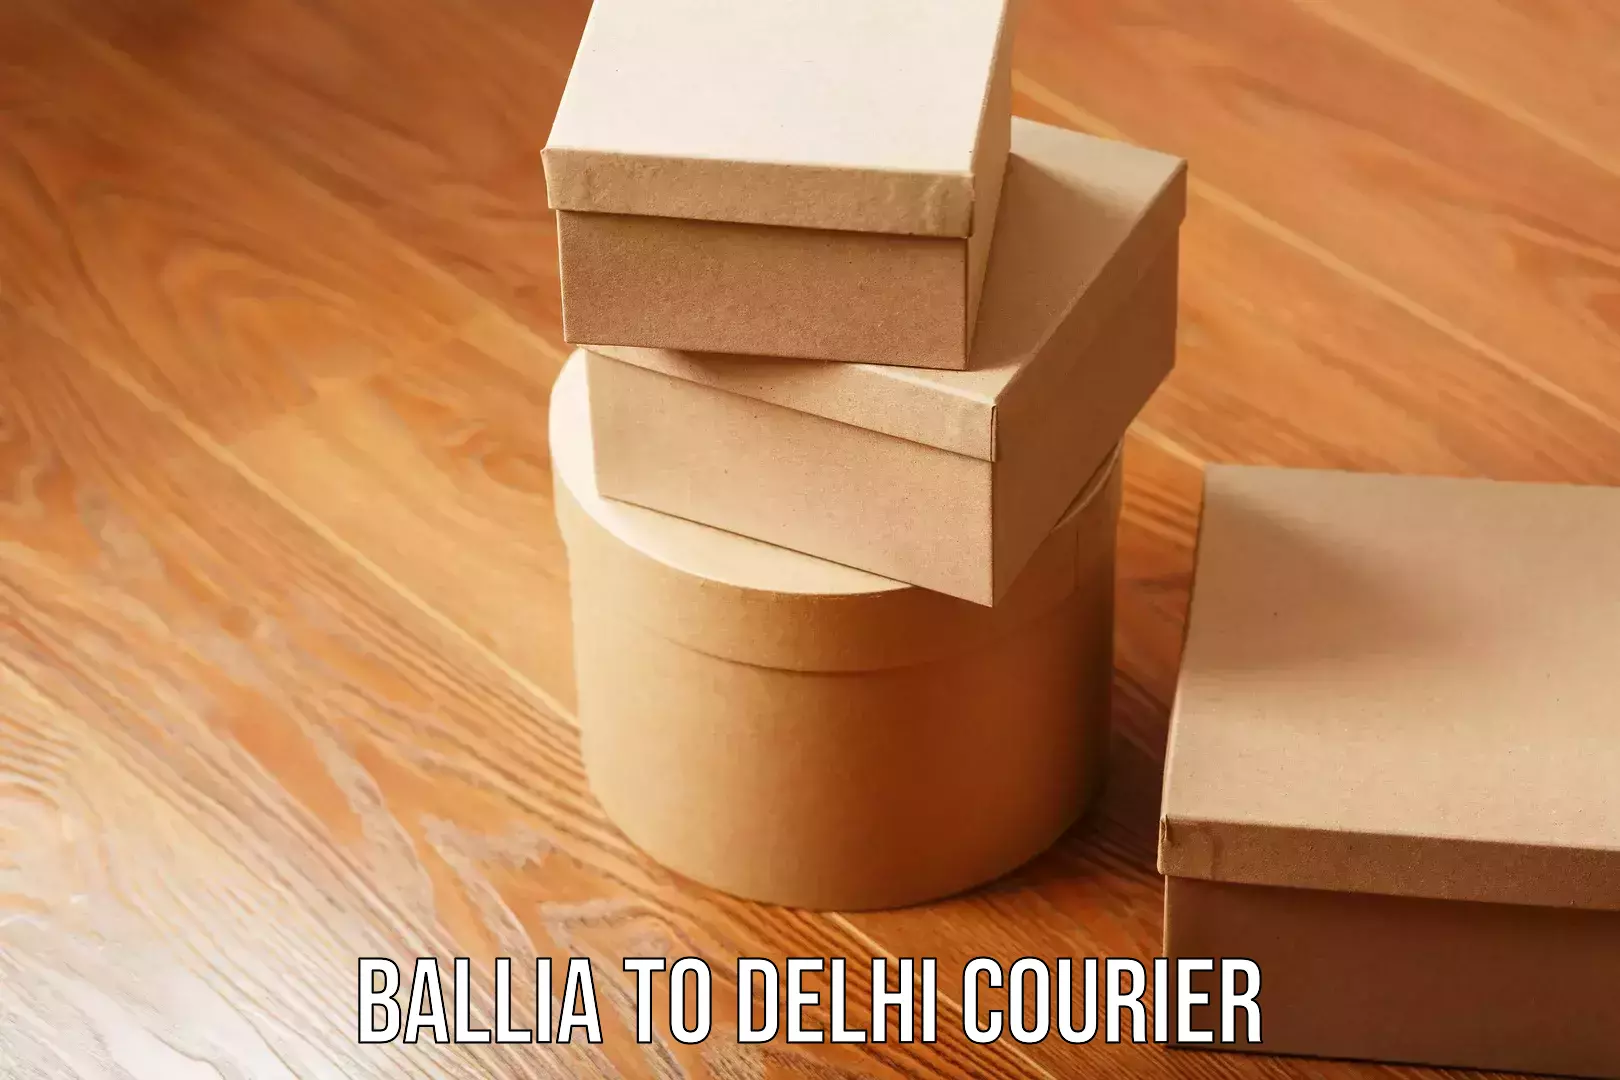 Premium delivery services Ballia to Delhi